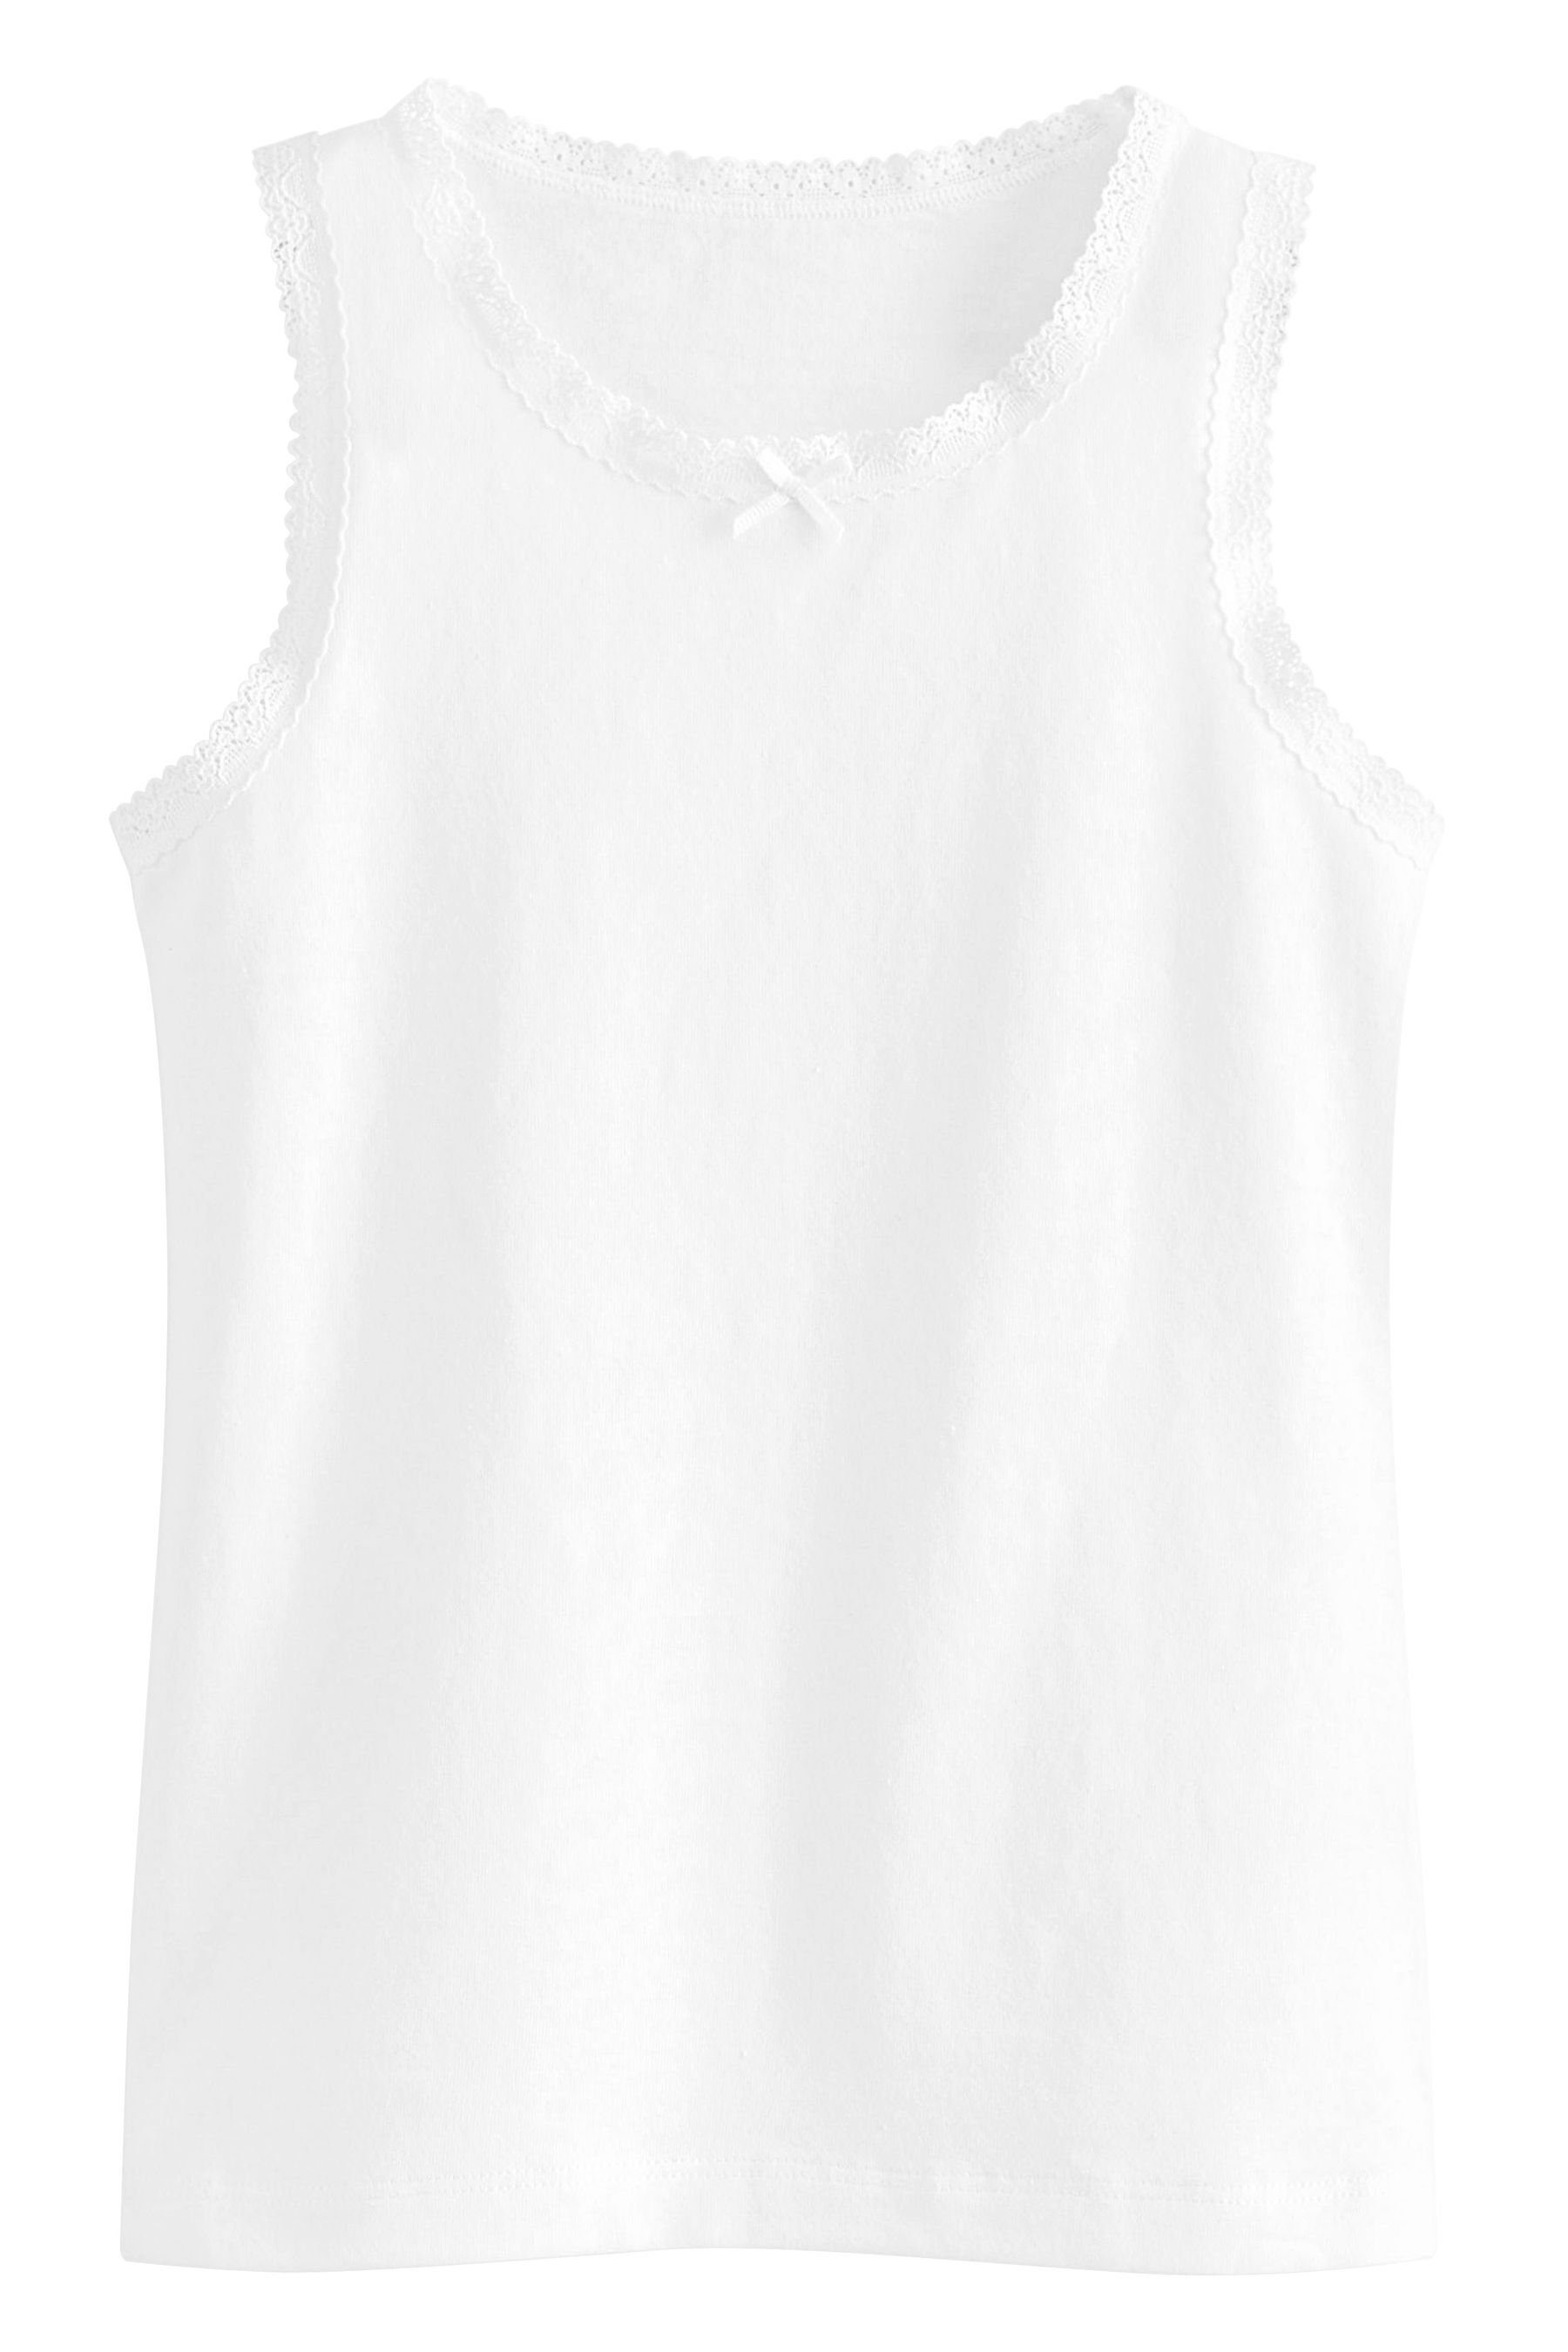 Unterhemden Lace 3er-Pack mit Next White im Unterhemd Lochstickerei (3-St)